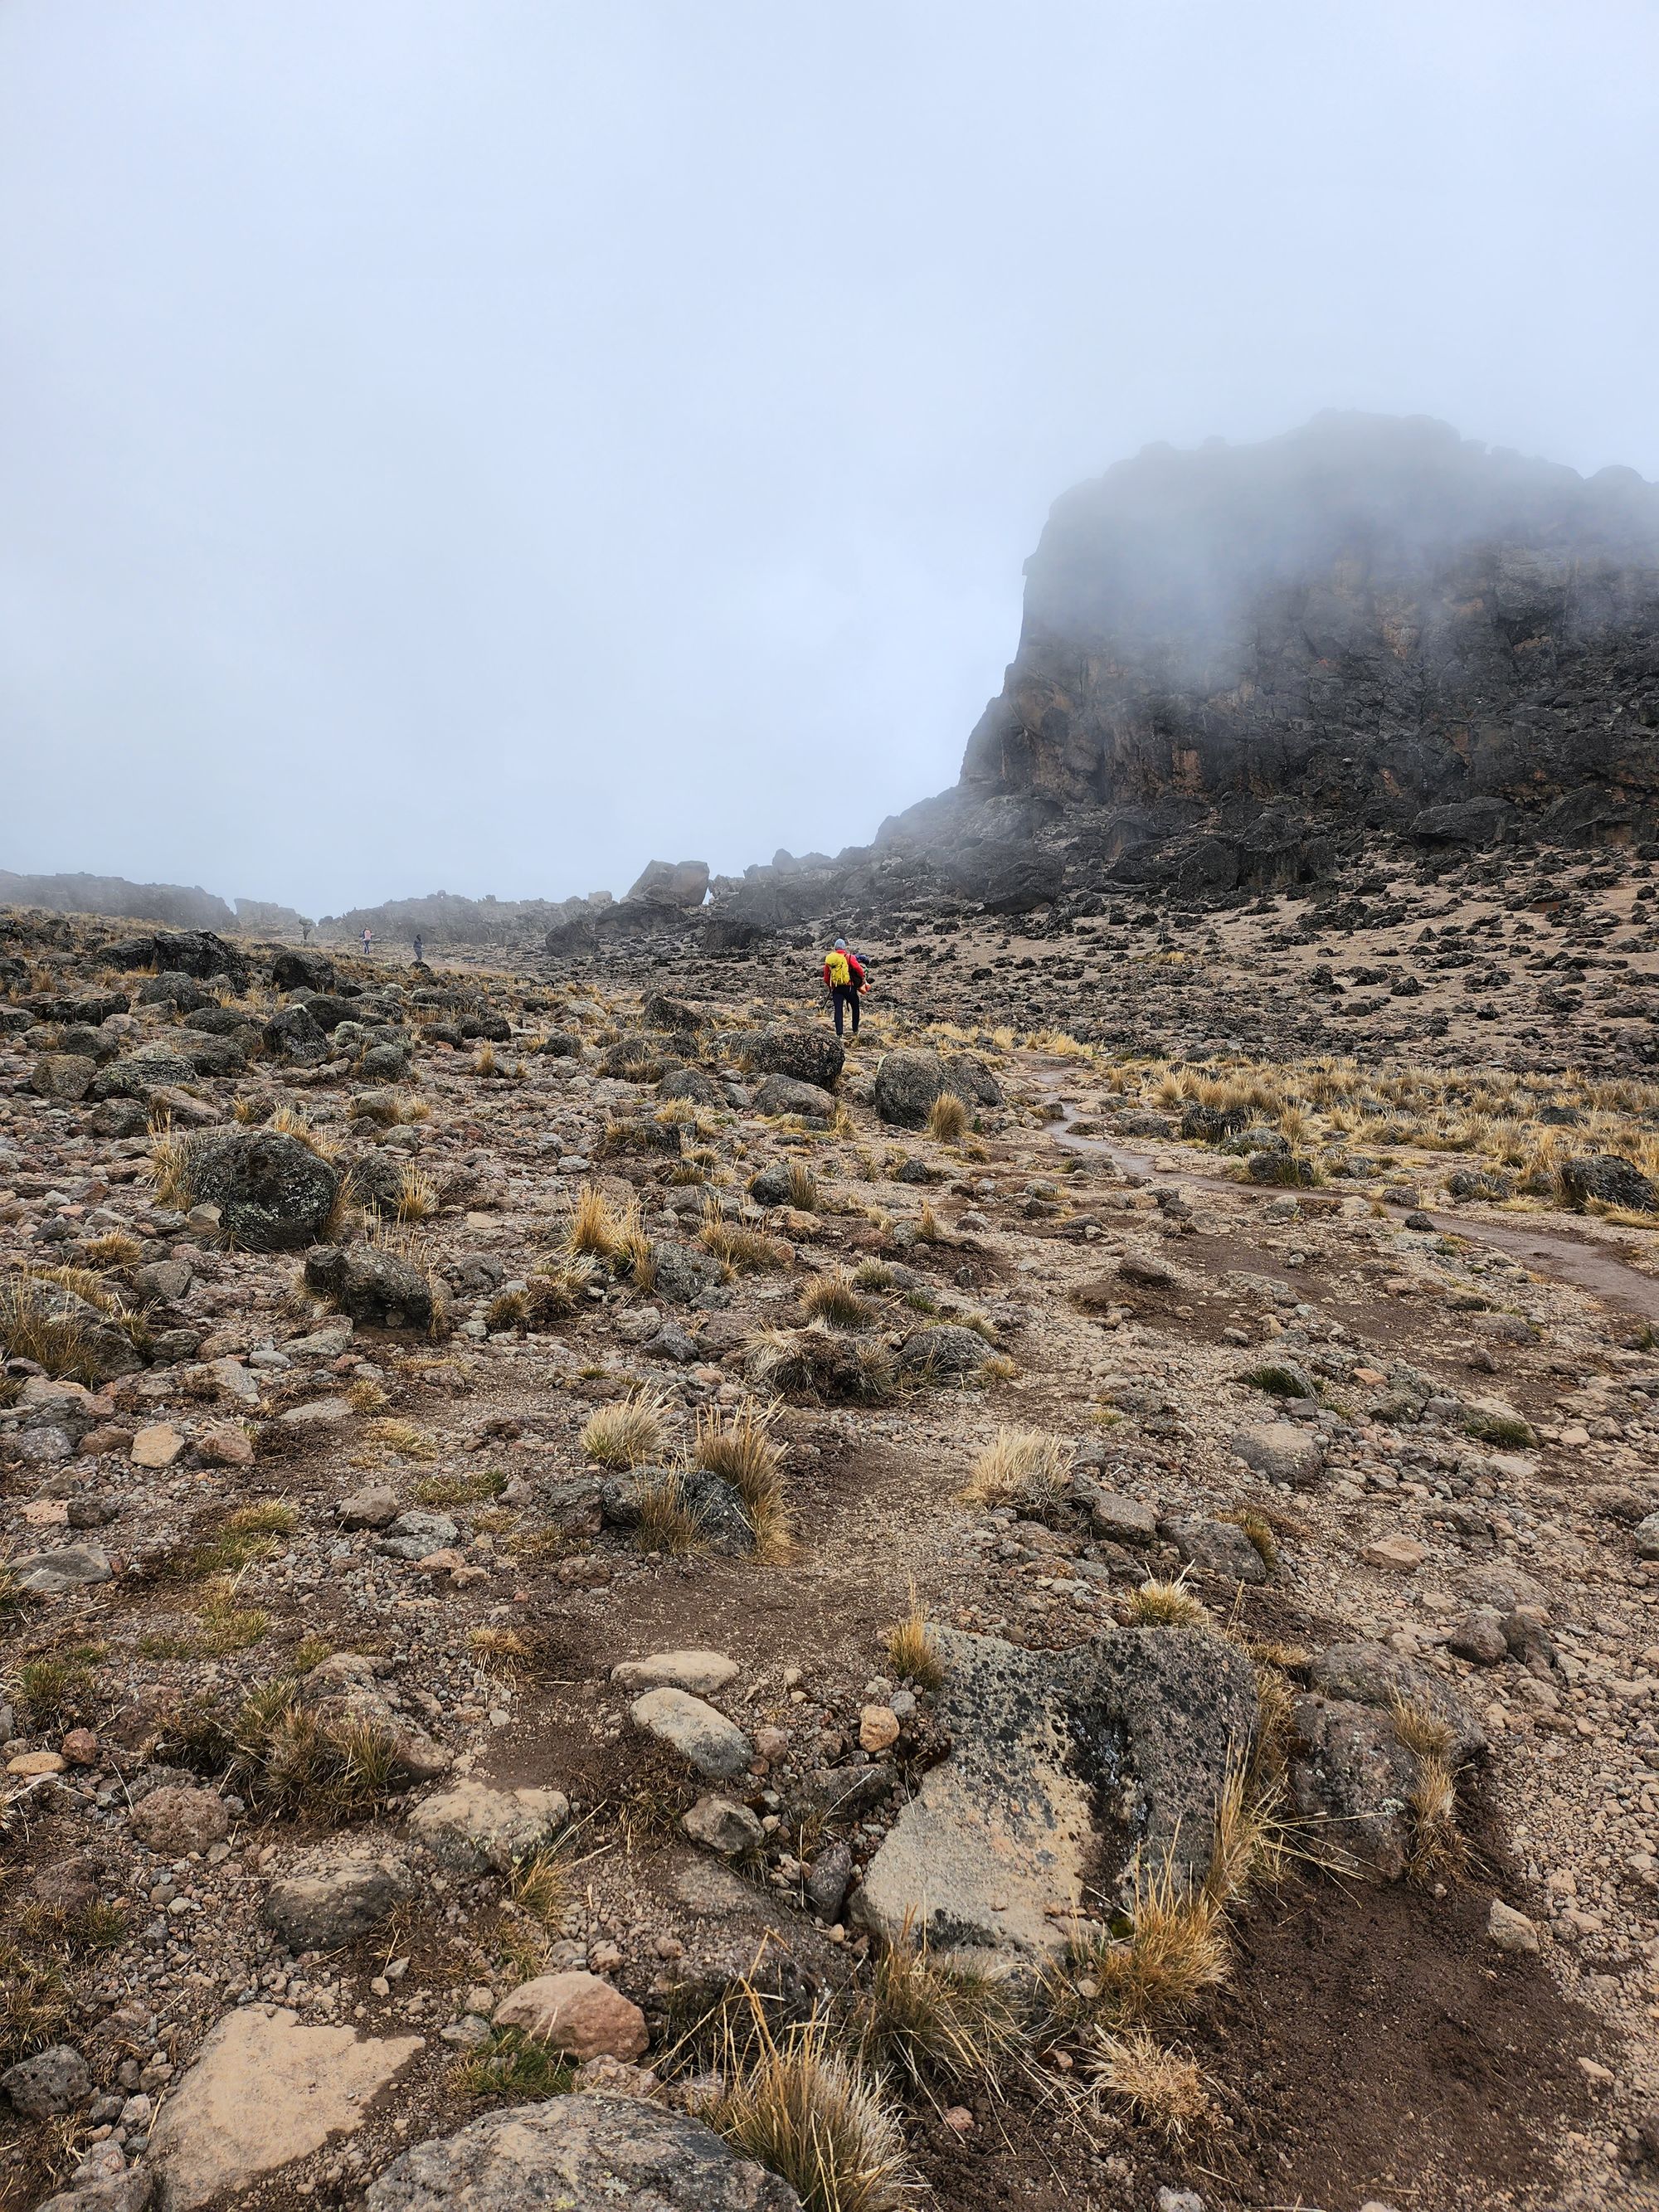 Plimbare pe Kilimanjaro. Vârful Uhuru (5895 m) - cel mai înalt din Tanzania